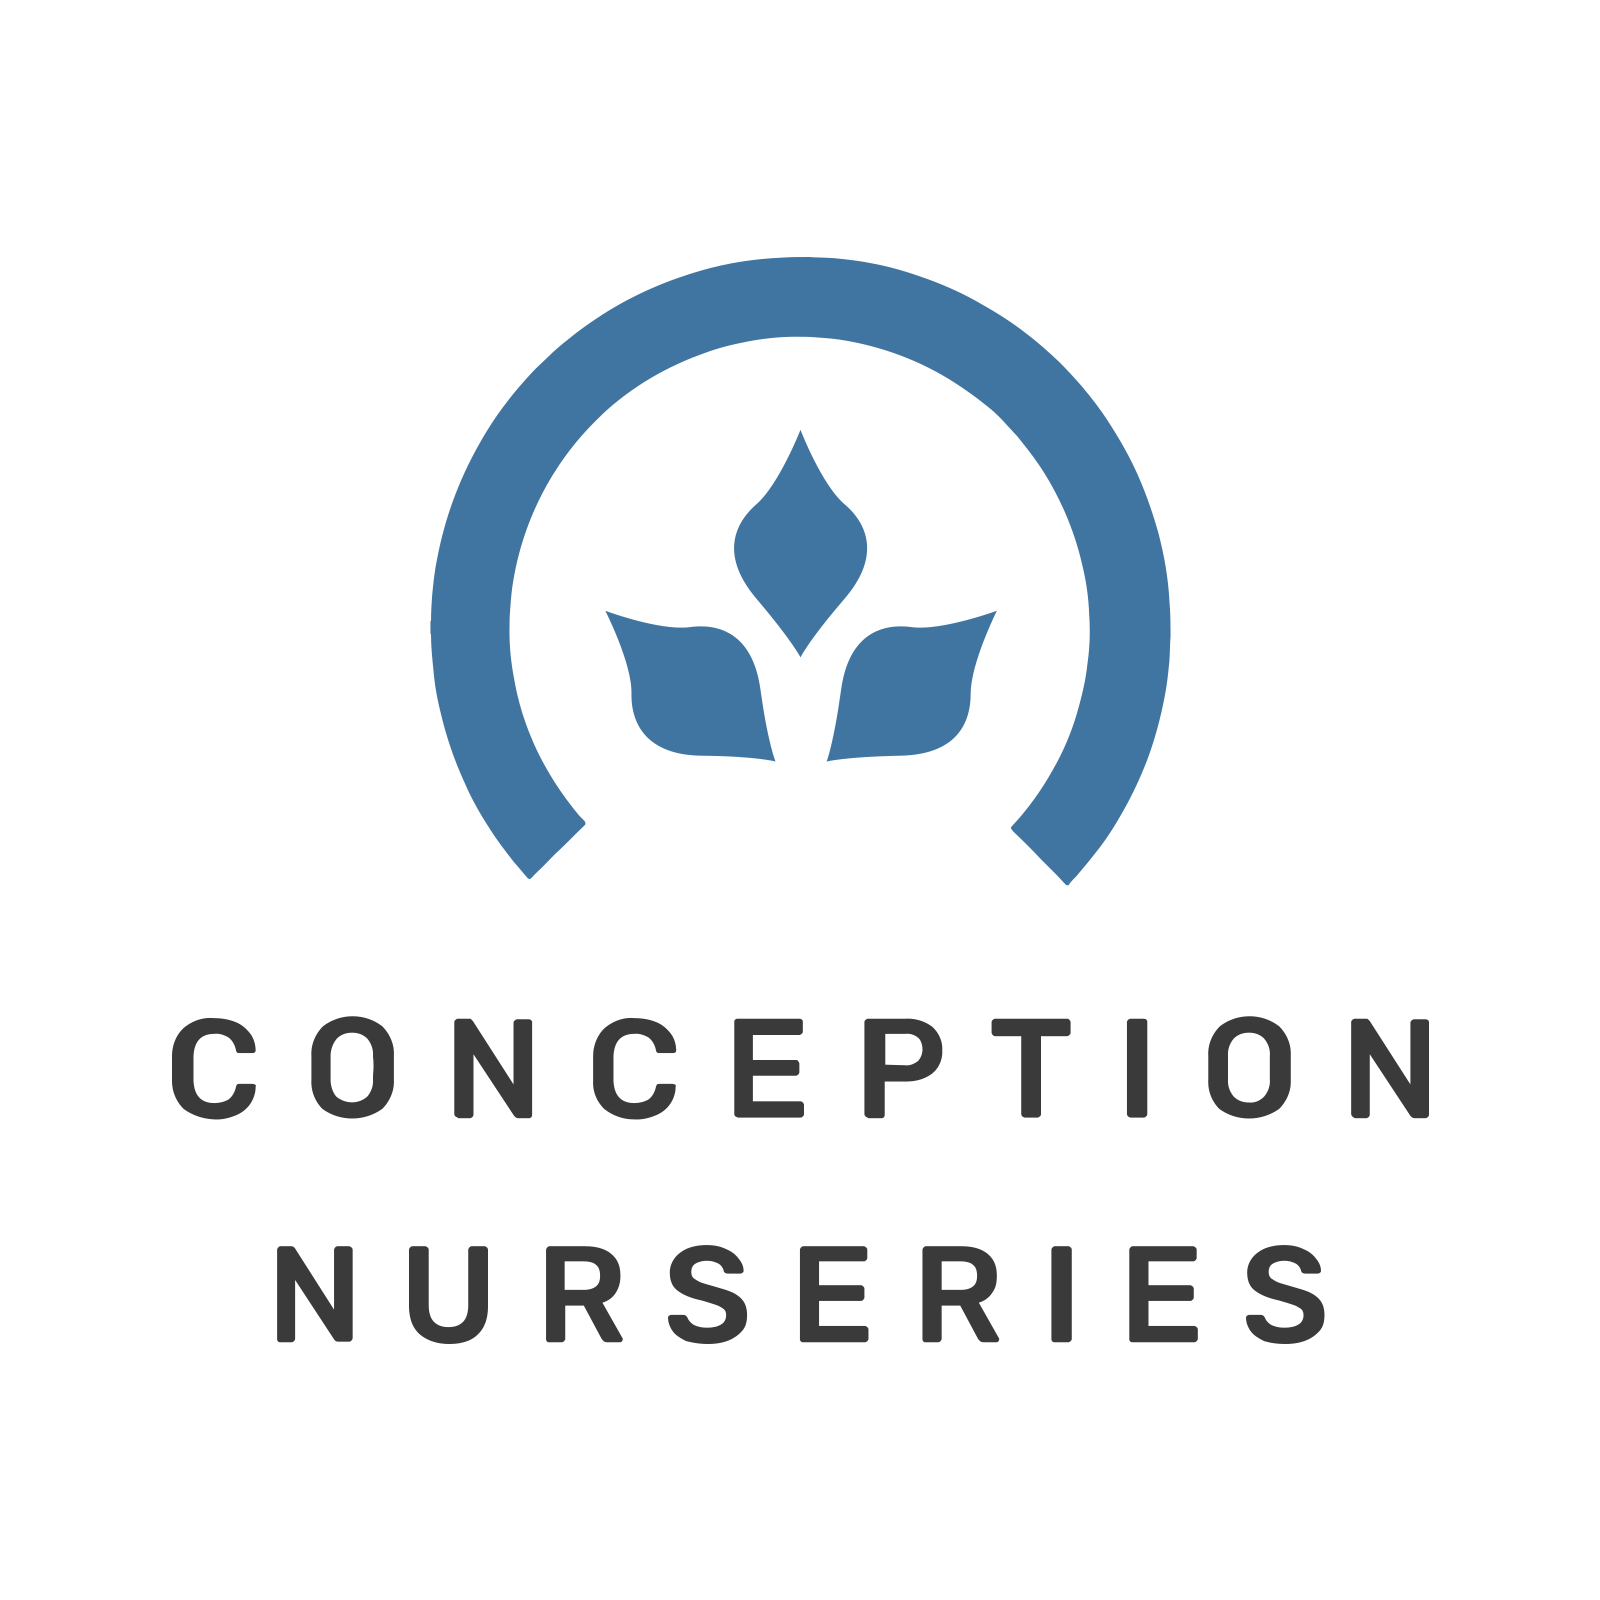 Conception Nurseries